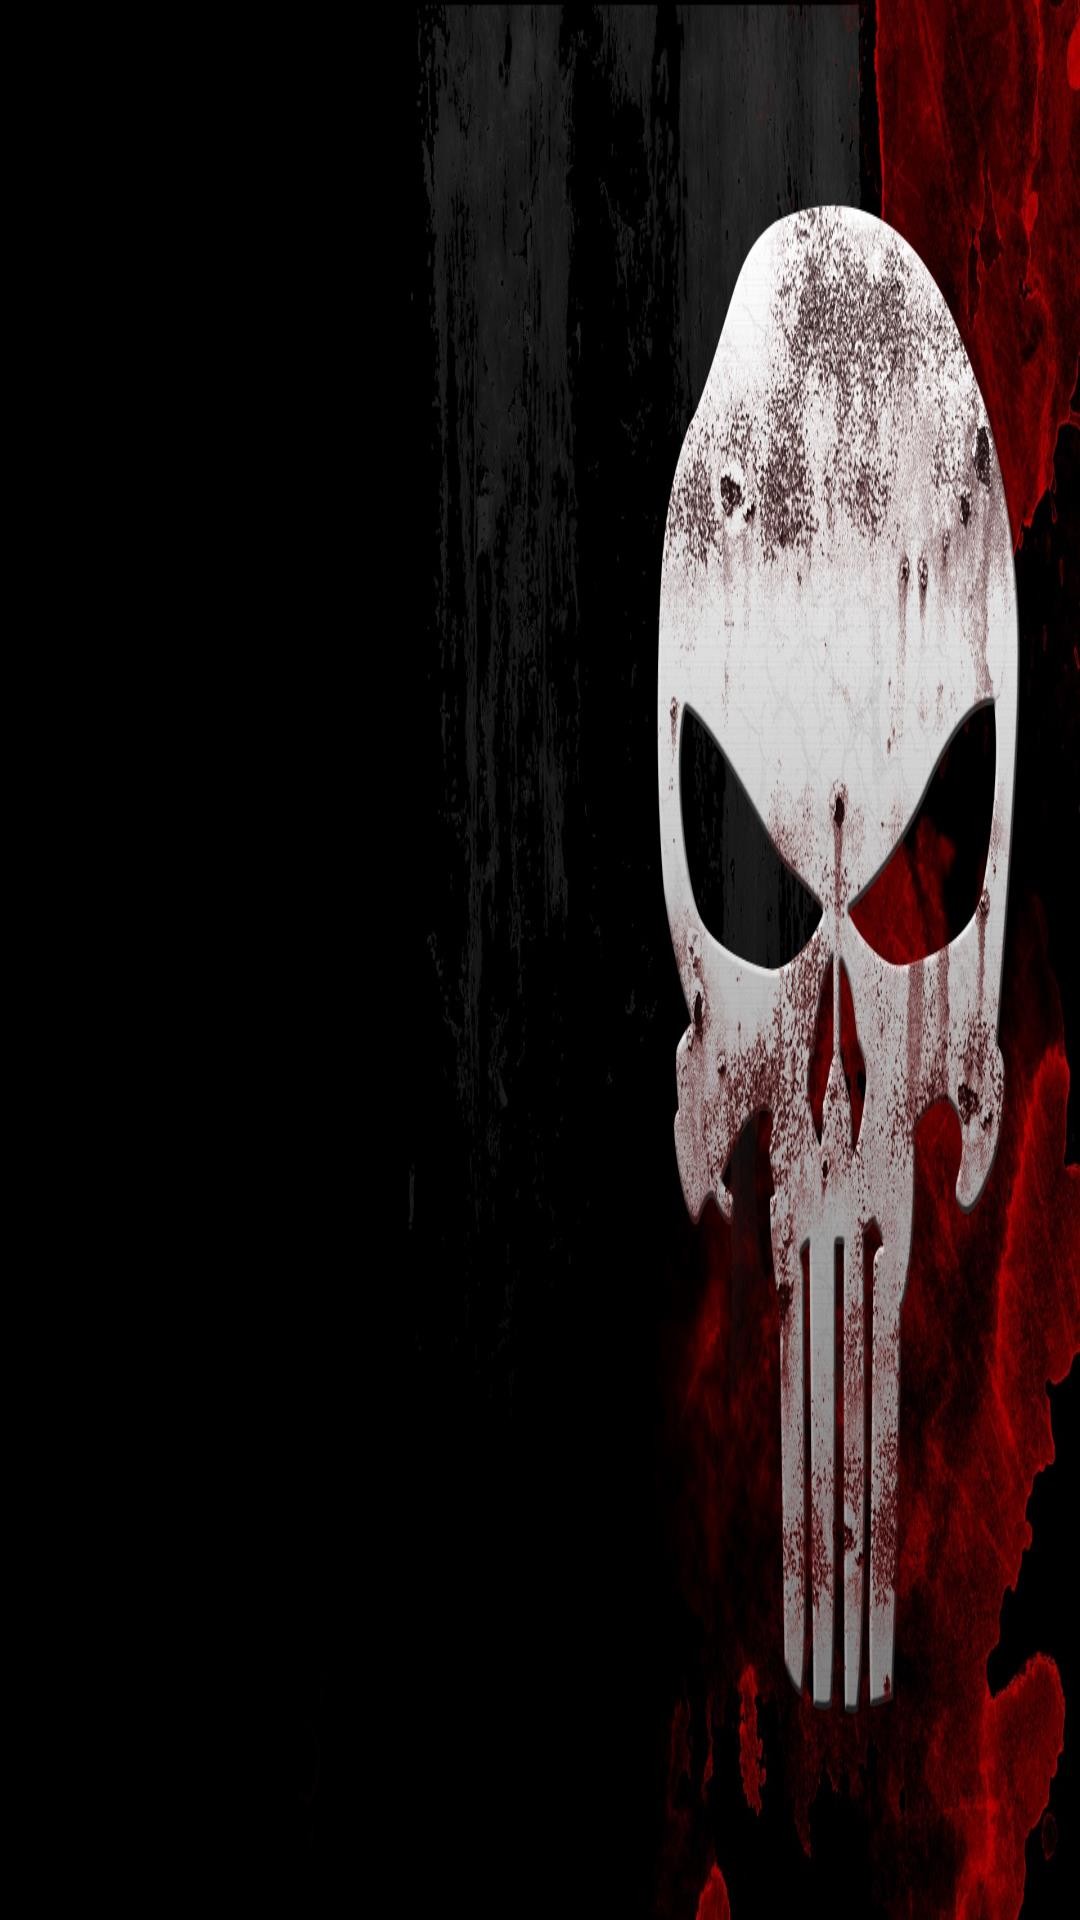 The Punisher Skull Wallpaper (59+ images)